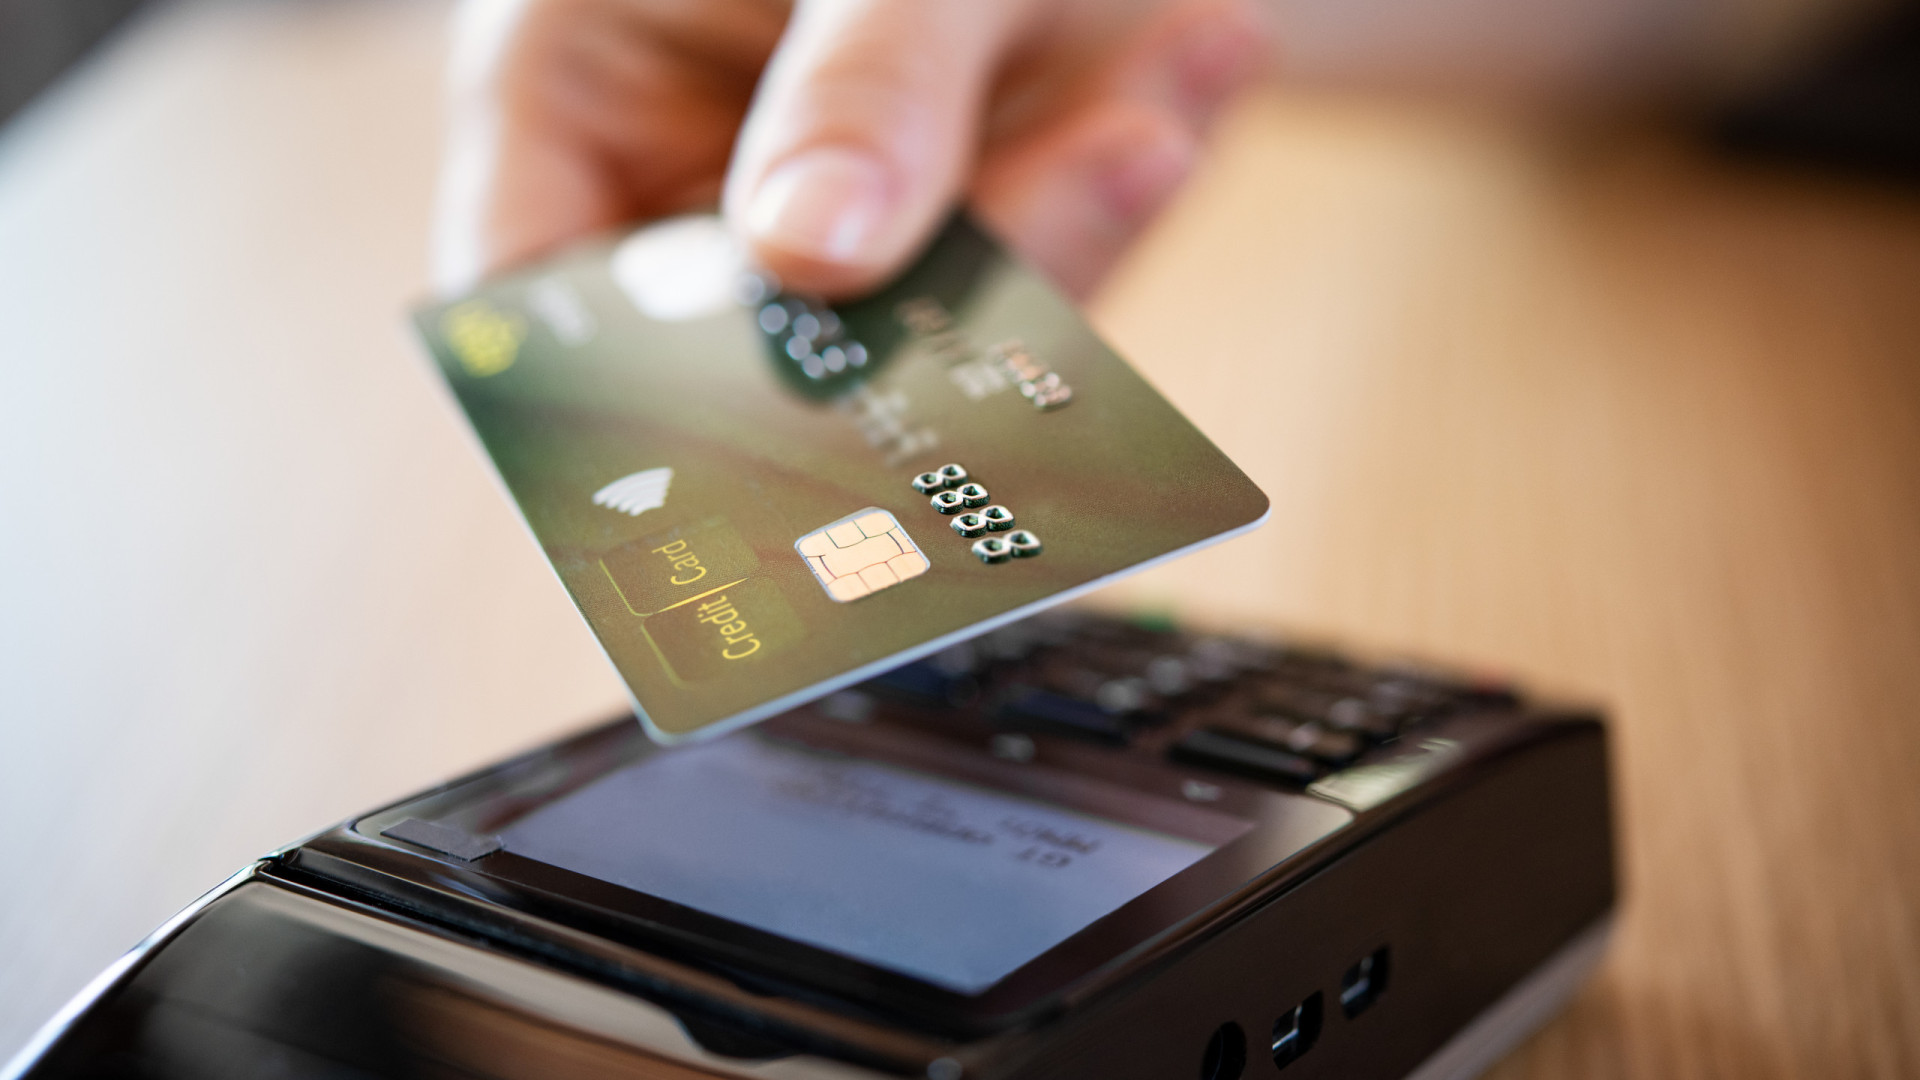 Associações criticam fim do parcelamento sem juros no cartão de crédito